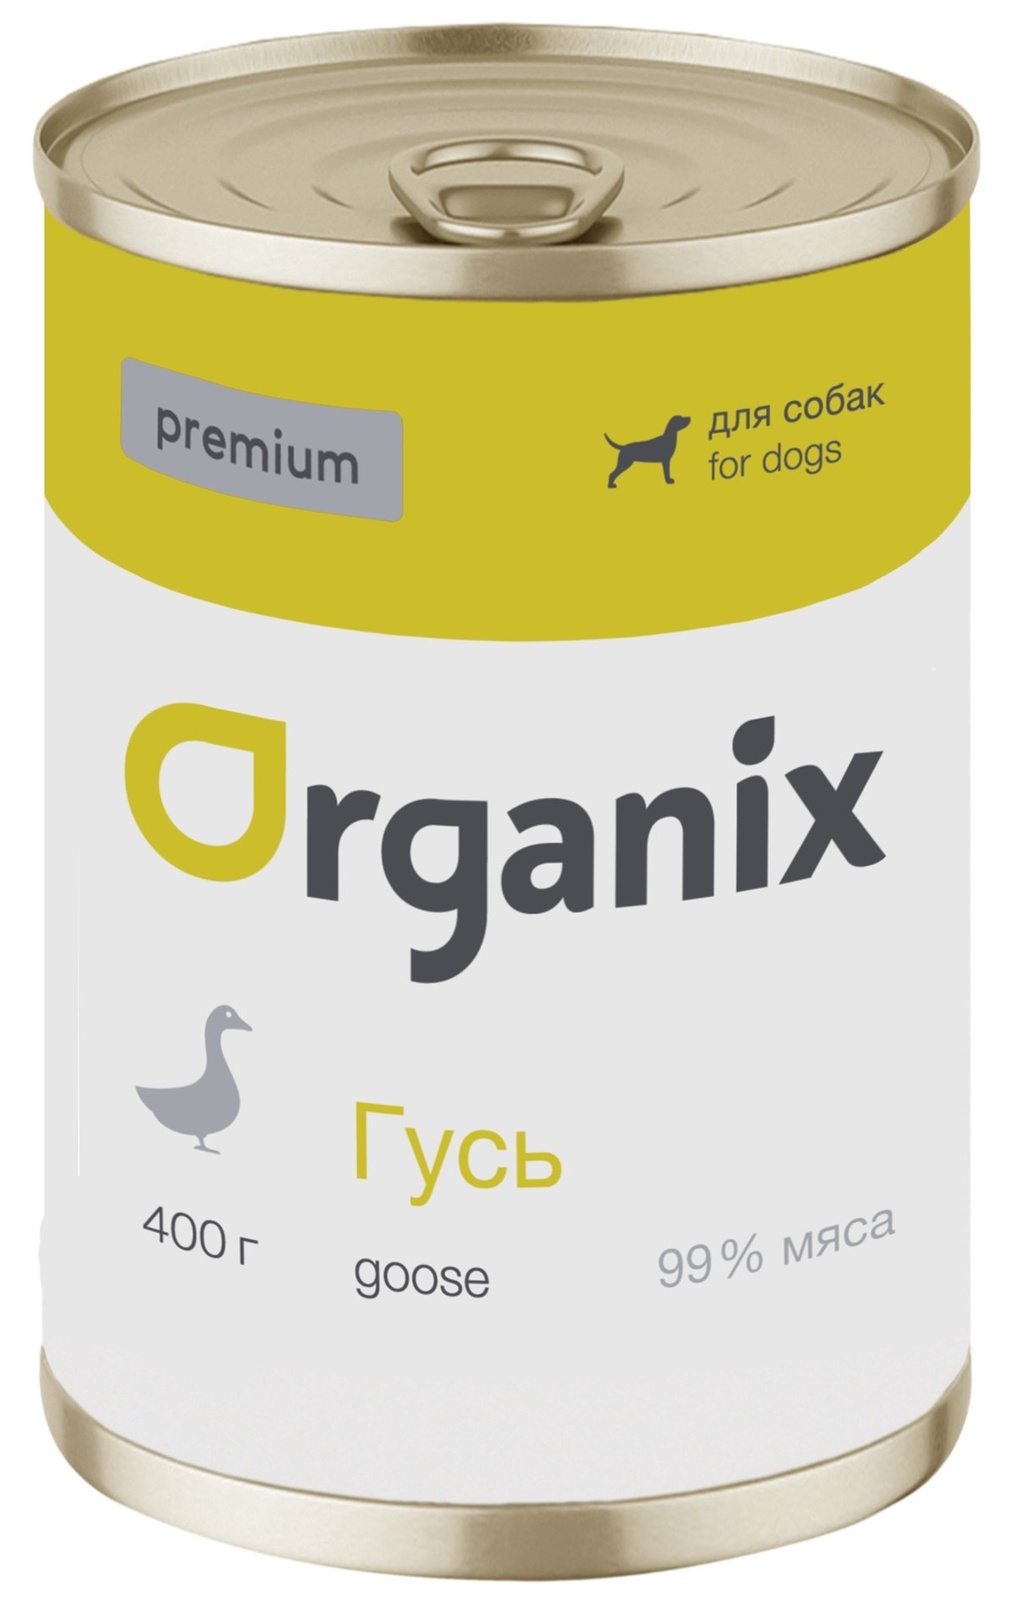 Organix консервы Organix монобелковые премиум консервы для собак, с гусем (400 г) organix консервы organix консервы для собак индейка с овощным ассорти 400 г